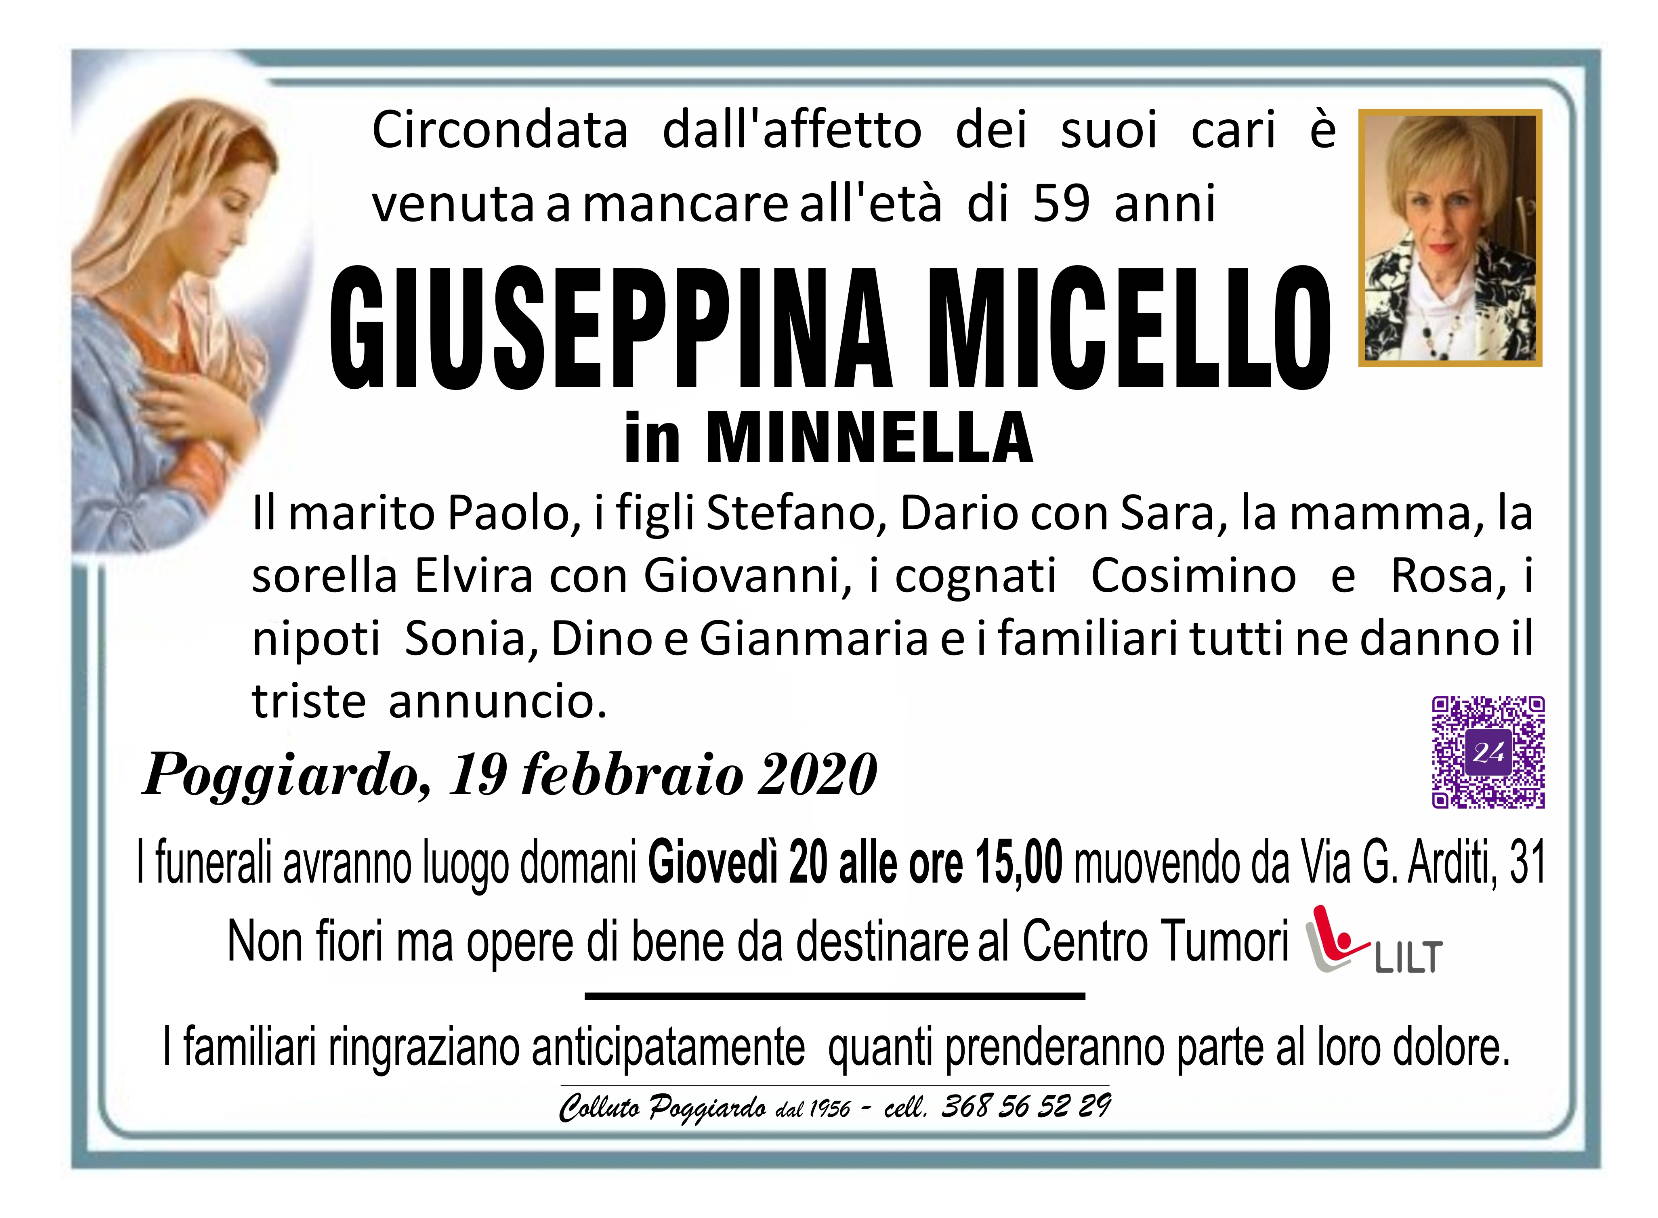 Giuseppina Micello